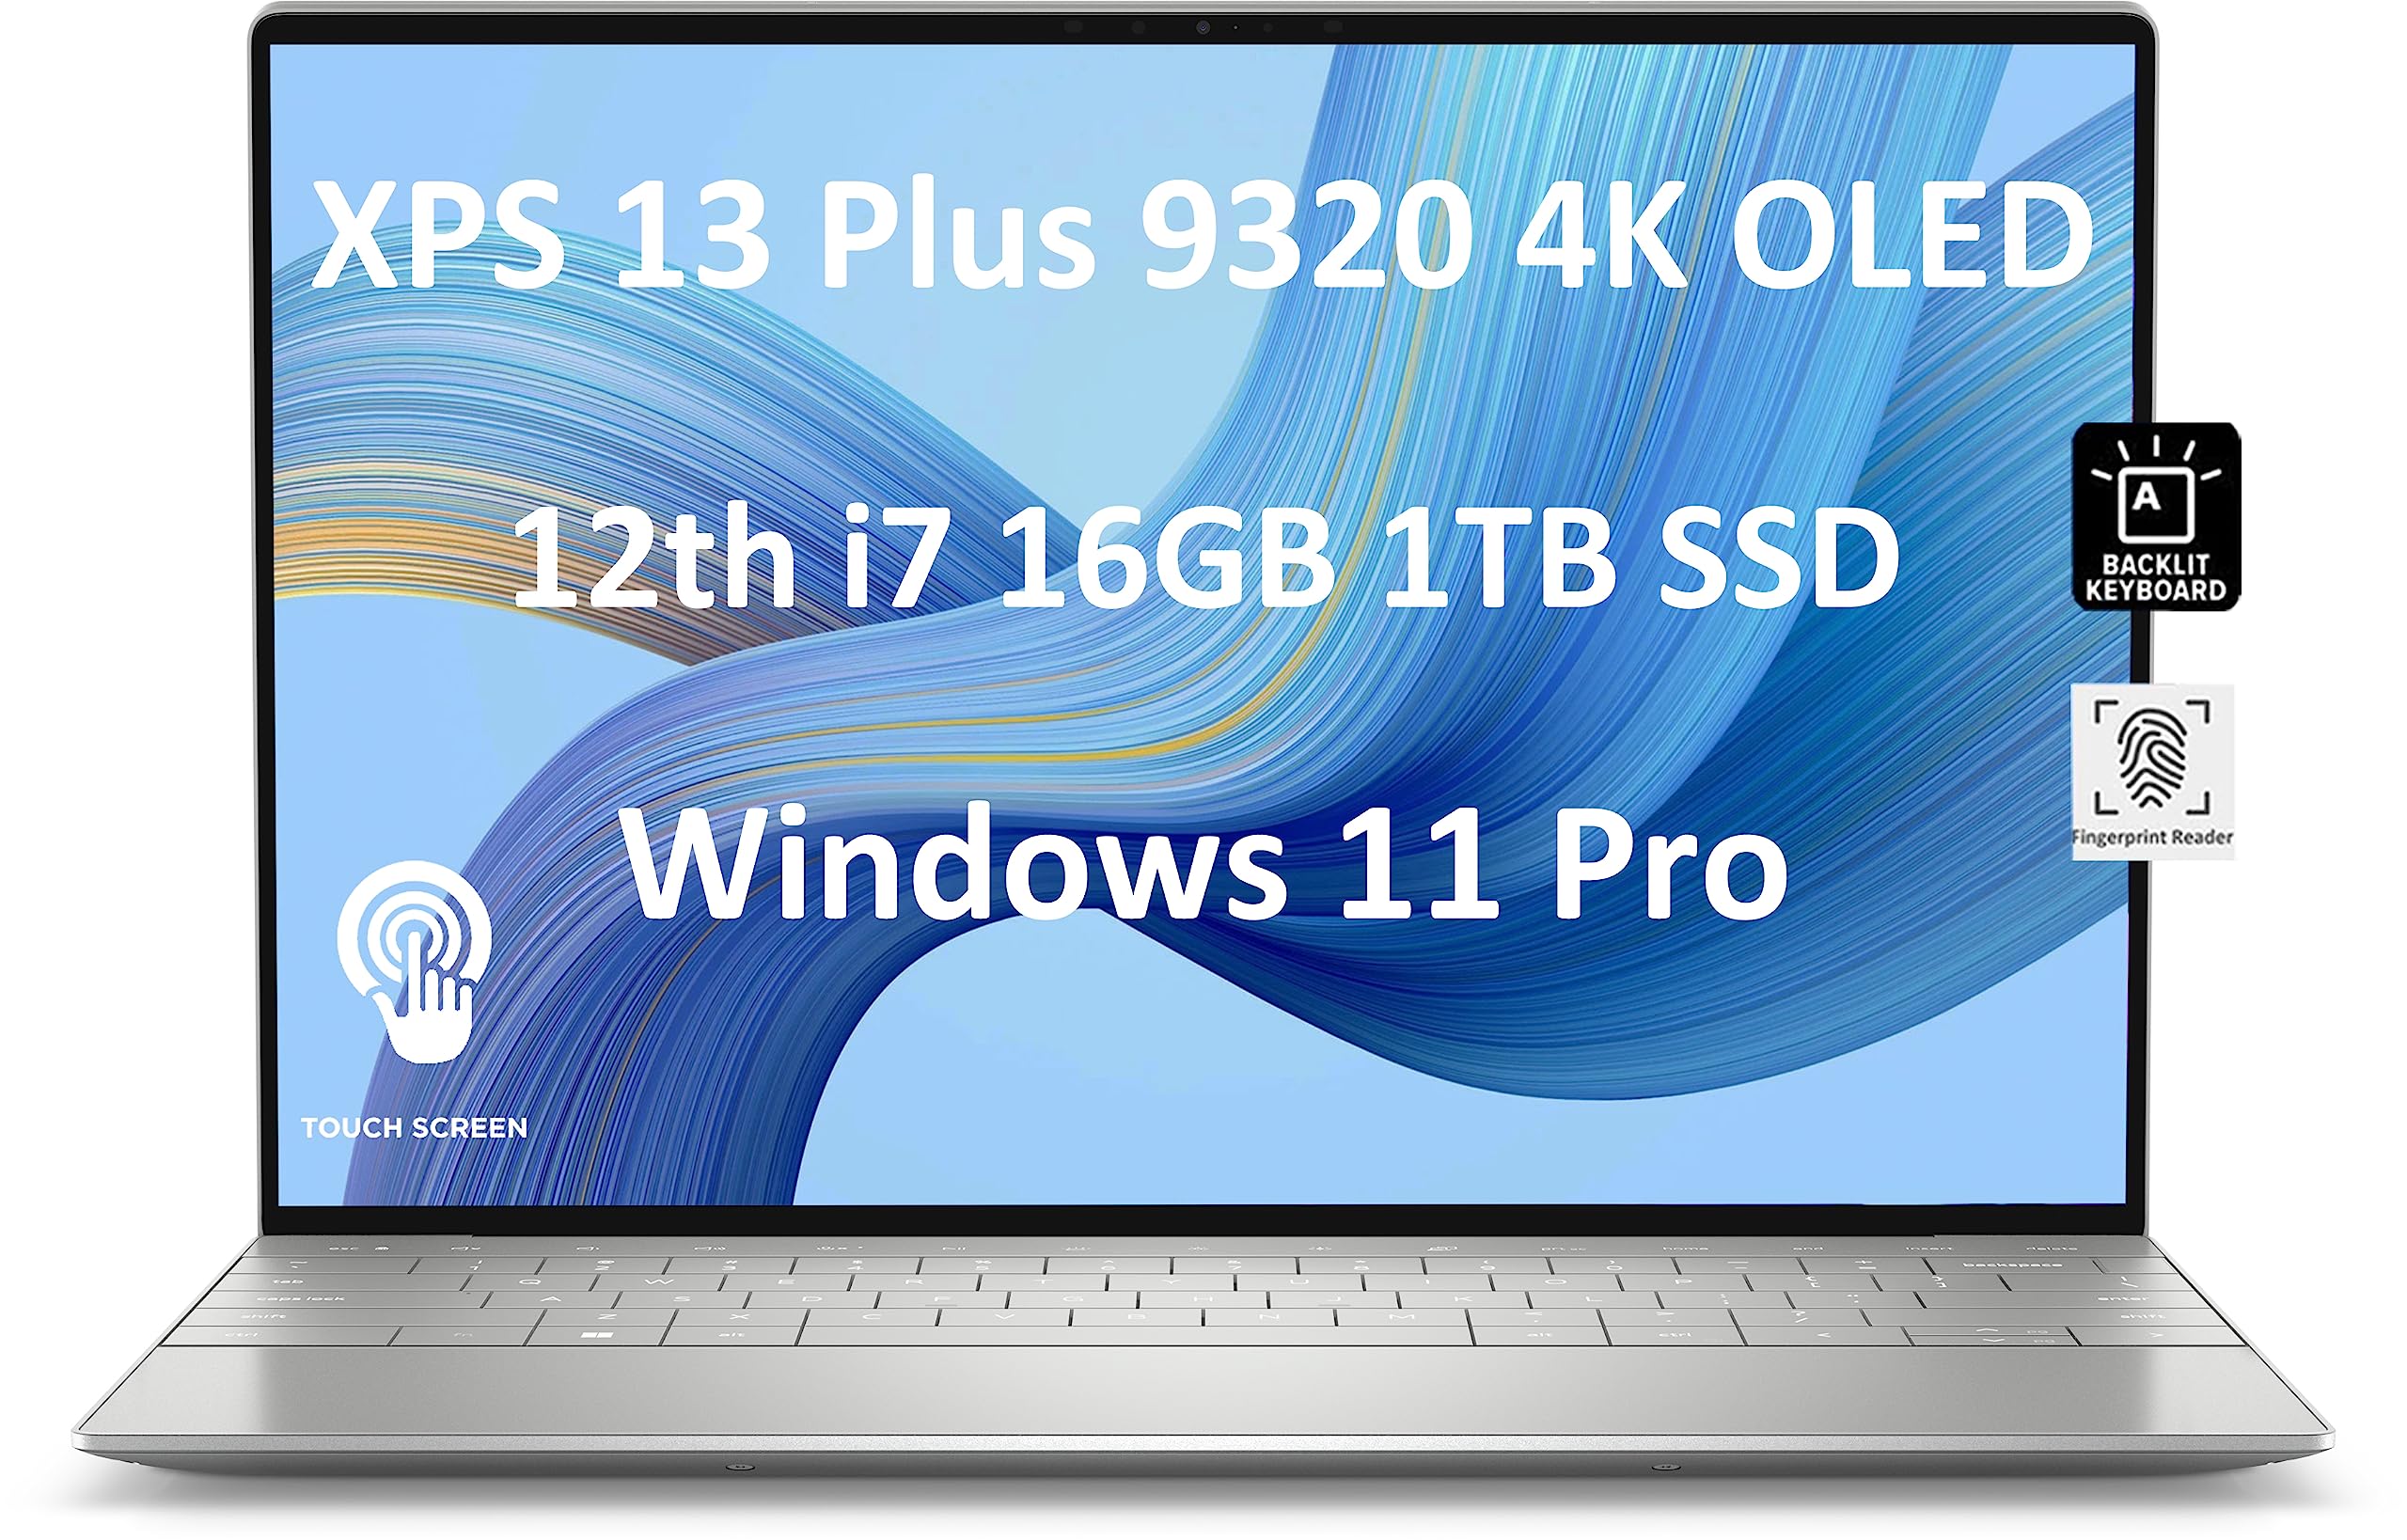 Dell XPS 13 Plus 9320 13.4